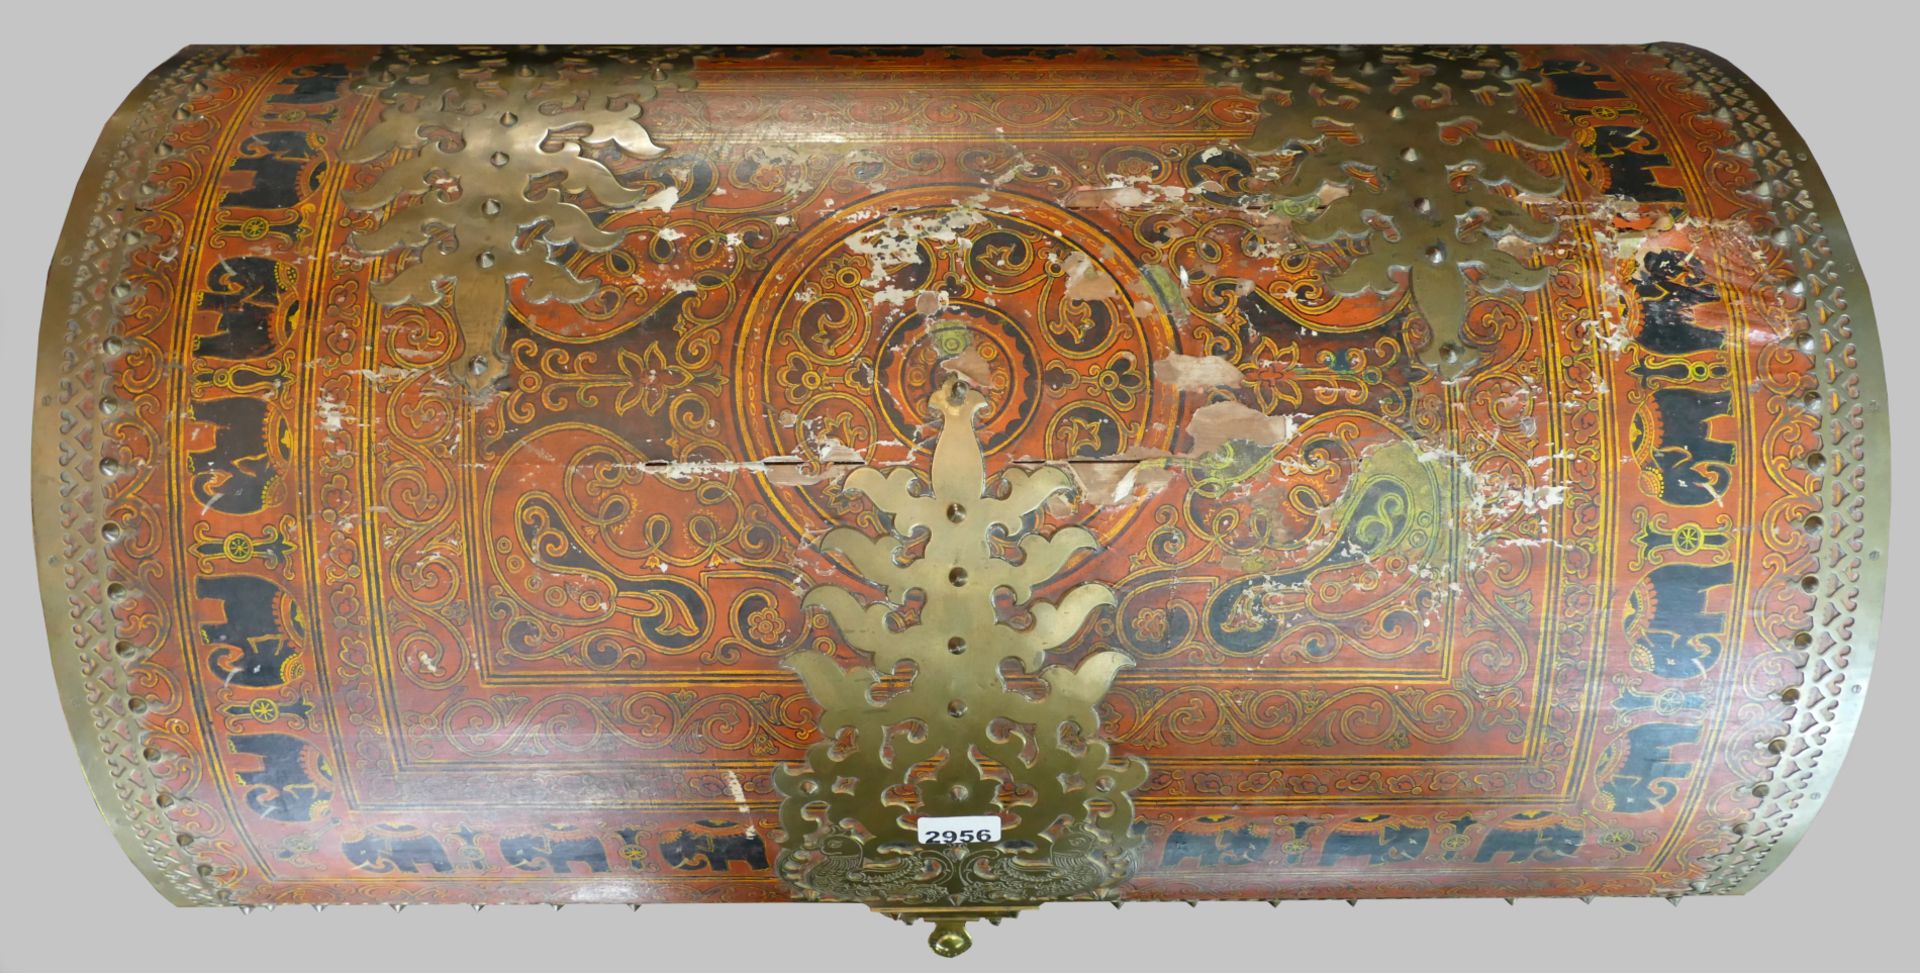 1 Runddeckeltruhe Holz mit bemalter Stoffbespannung "Elefantendekor im indischen Stil" und Messingbe - Image 2 of 2